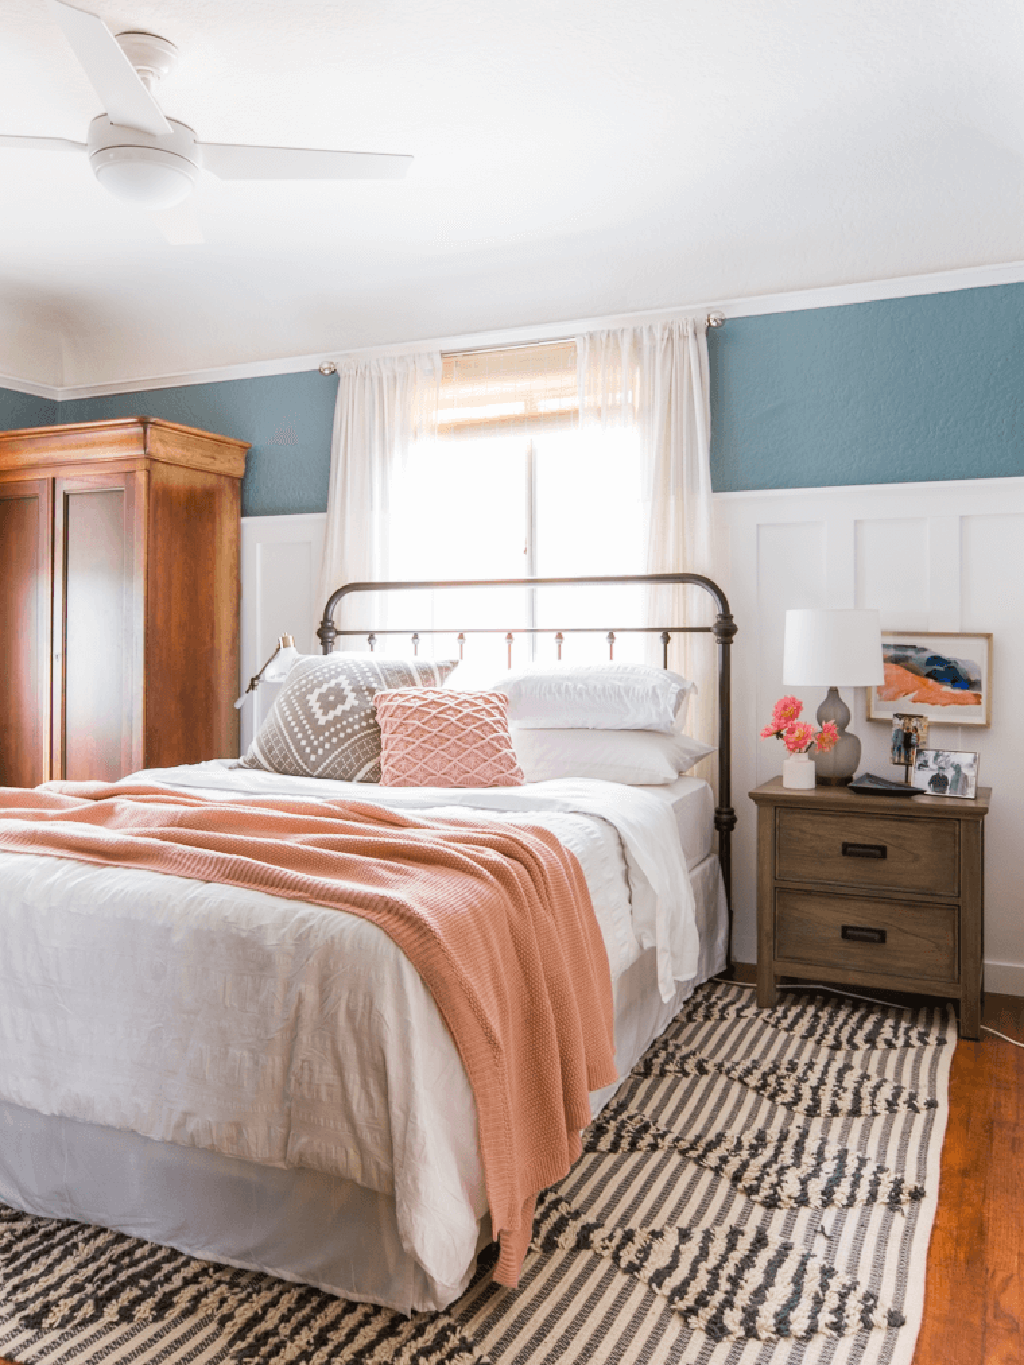 Ideas para decorar tu habitación con alfombras